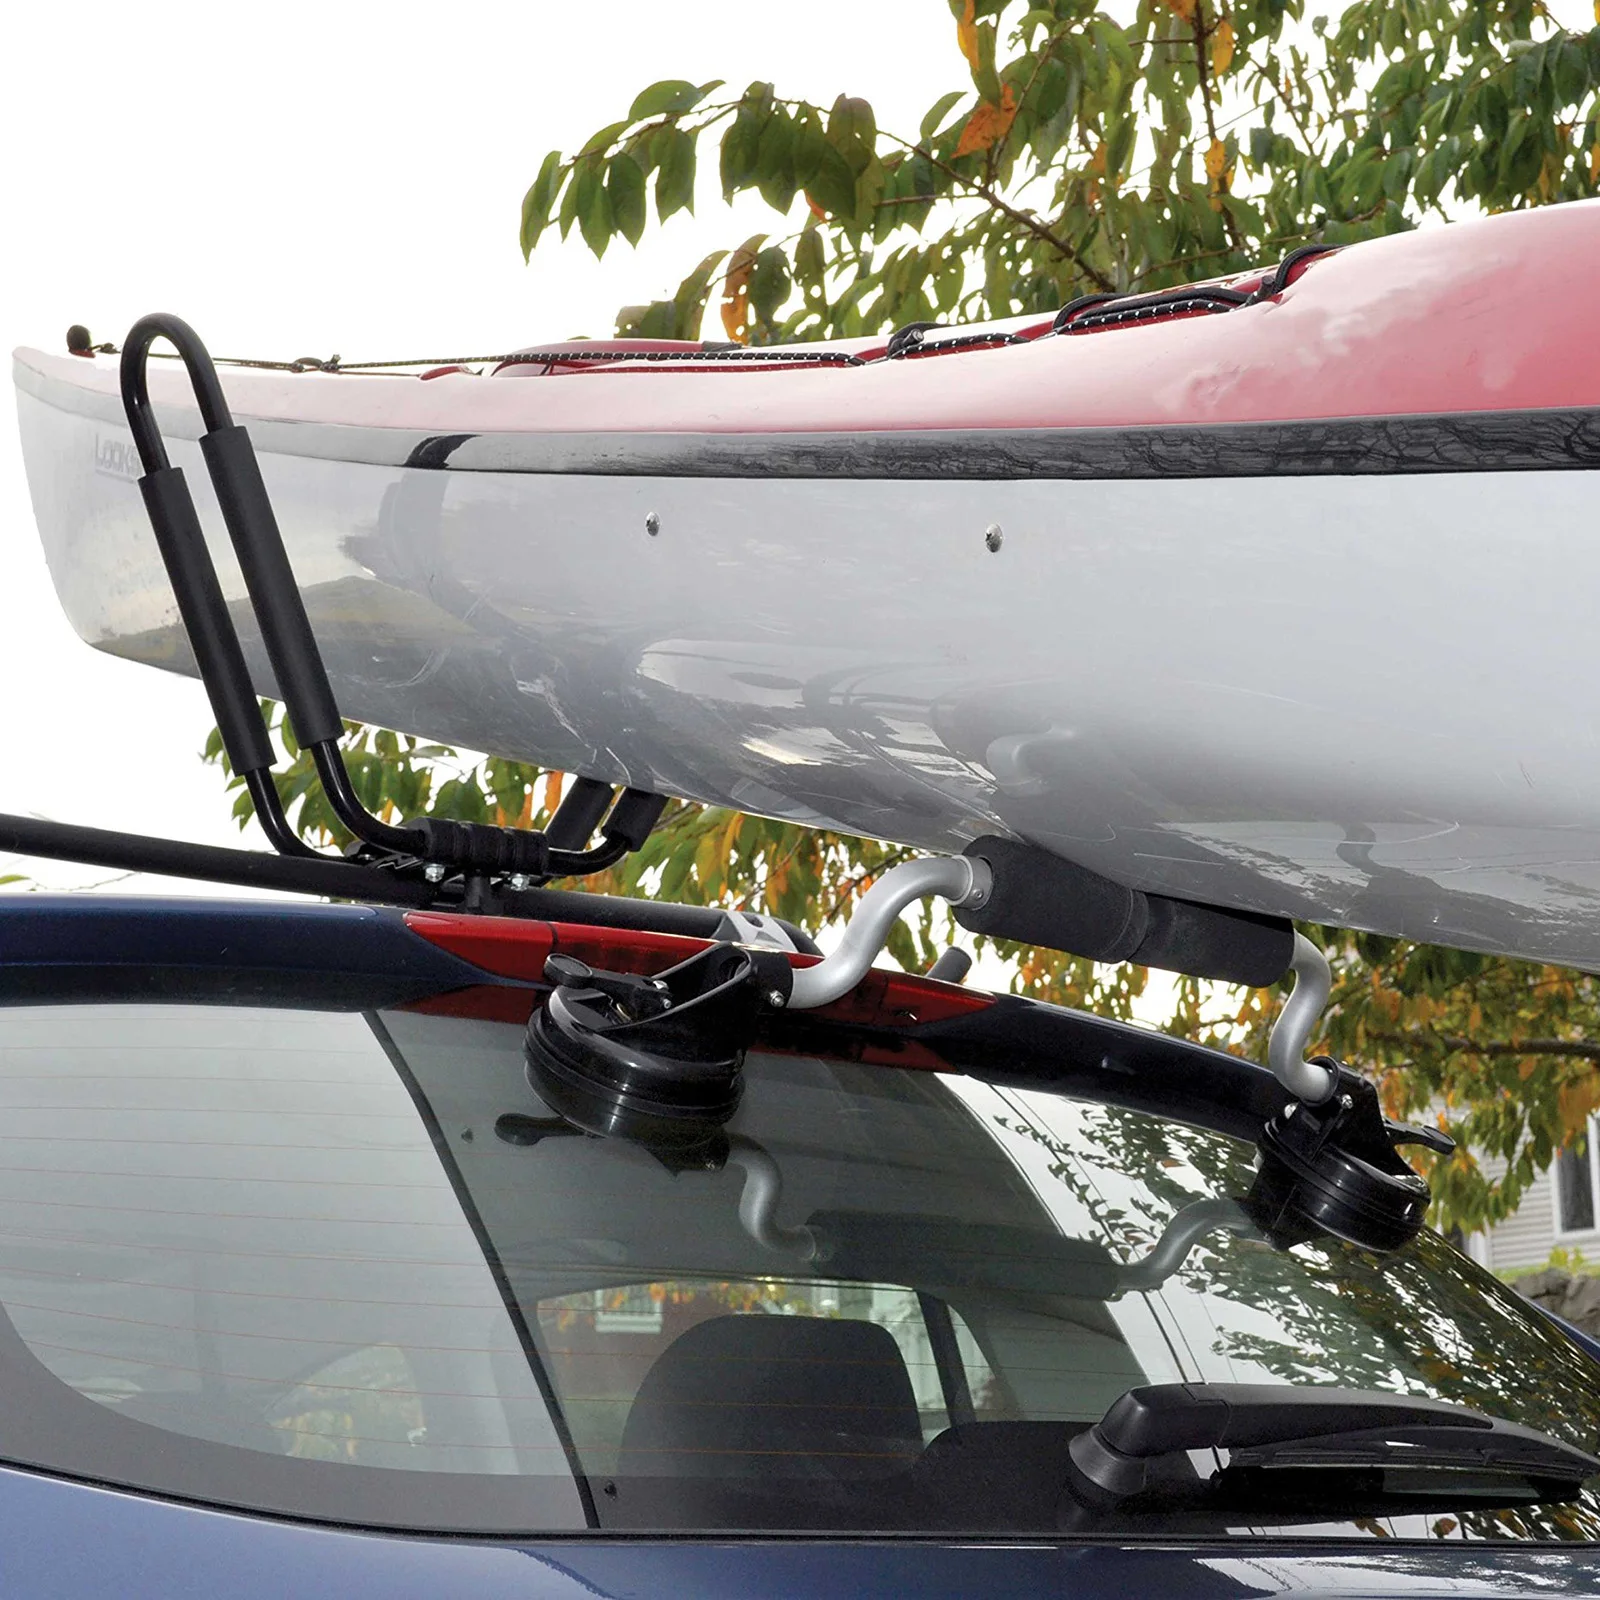 

Алюминиевые роликовые Каяка, подвесная доска, вспомогательная нагрузка на крышу автомобиля, присоска